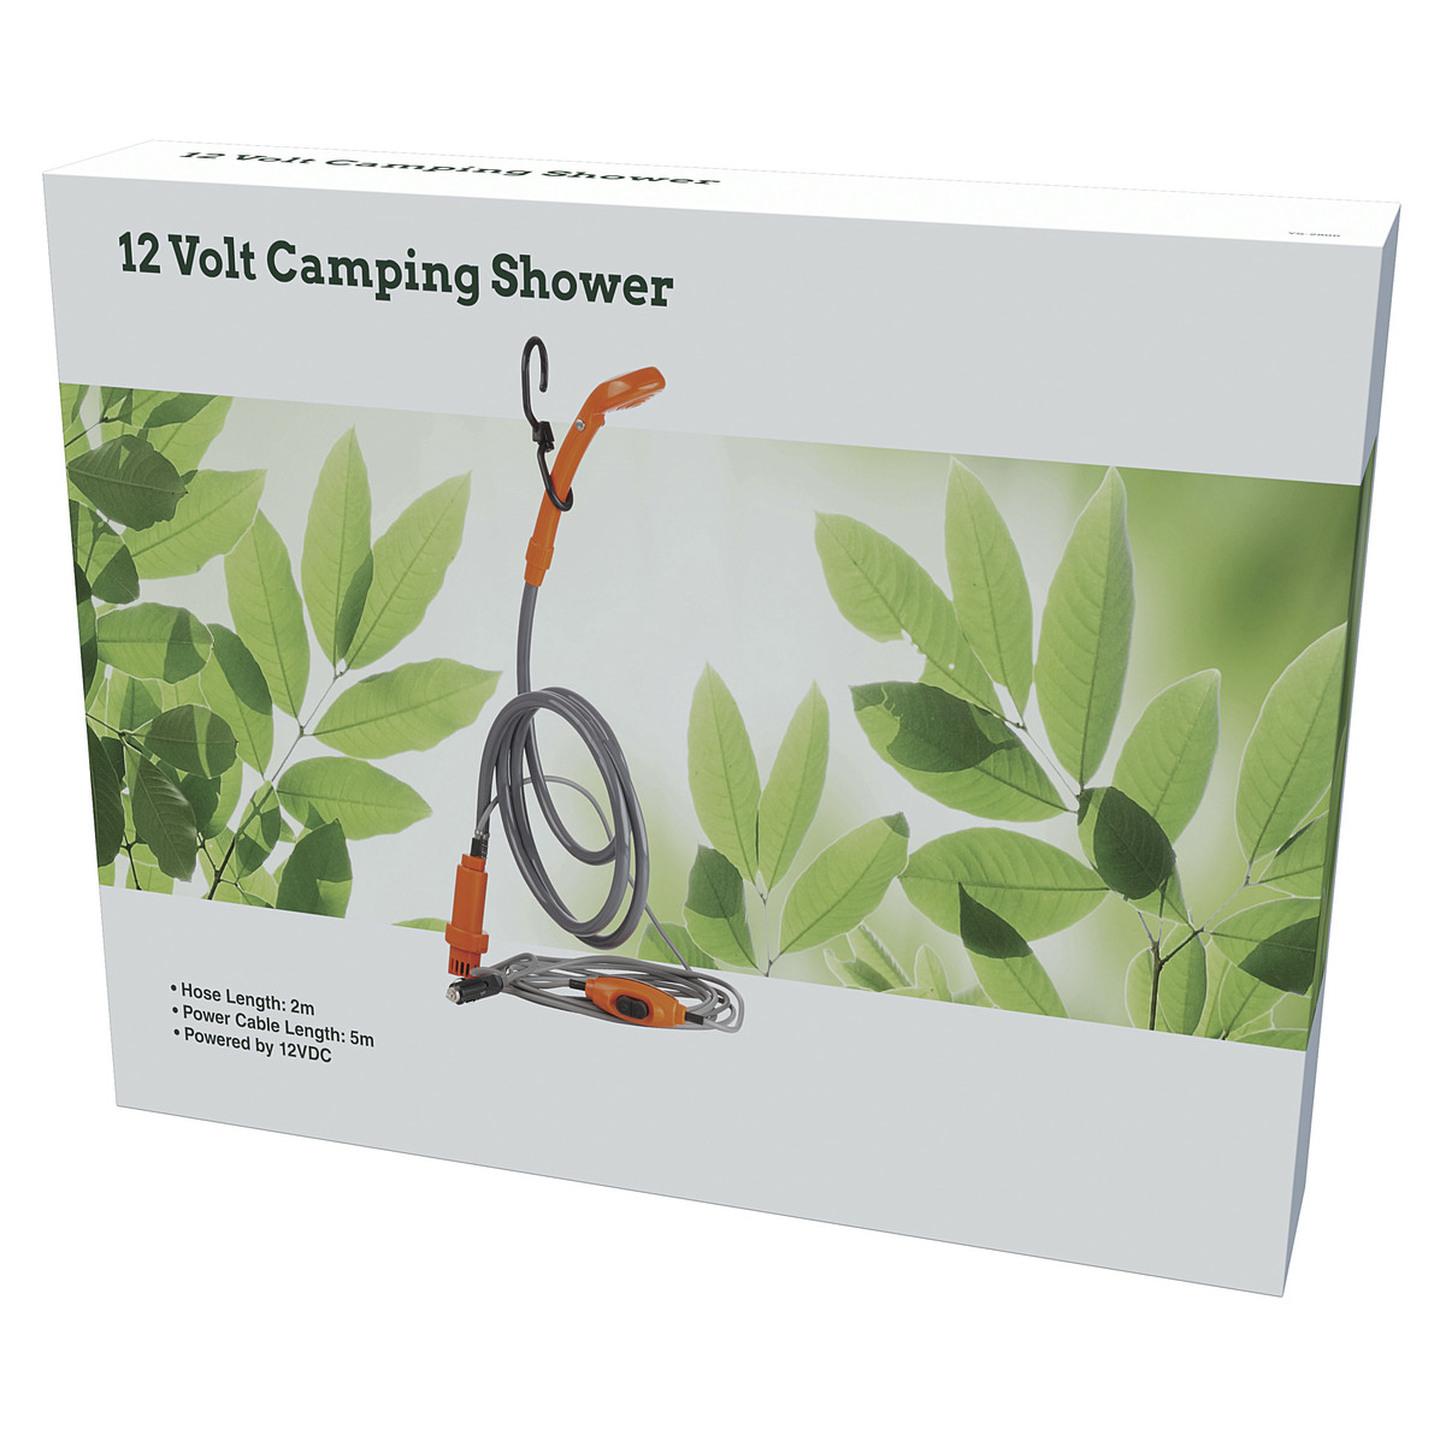 12 Volt Camping Shower